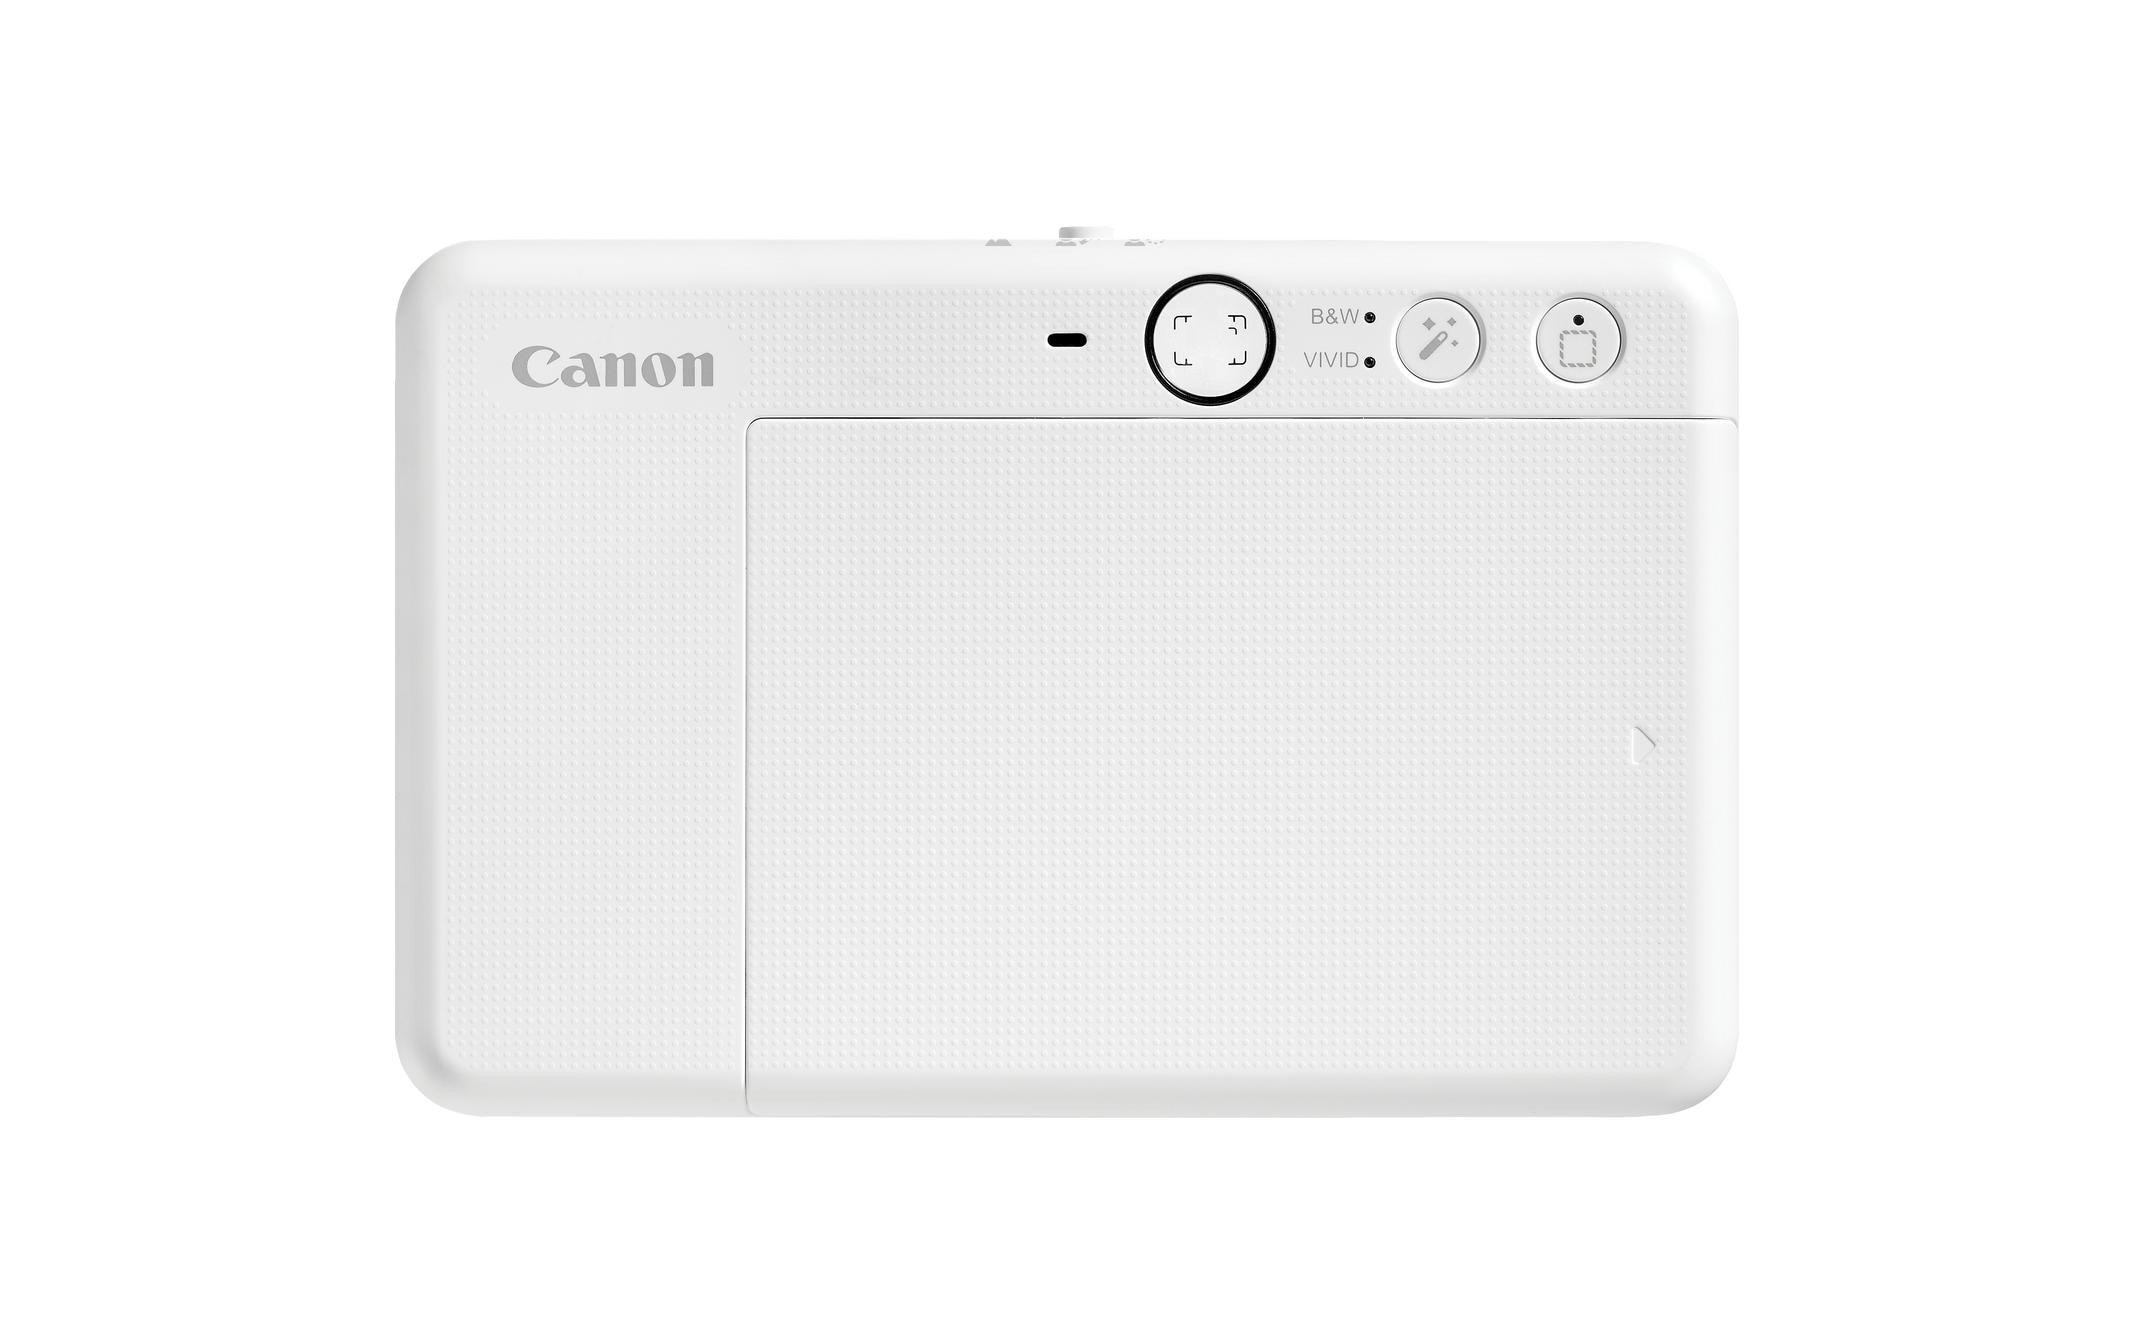 Canon Sofortbildkamera »Zoemini S2«